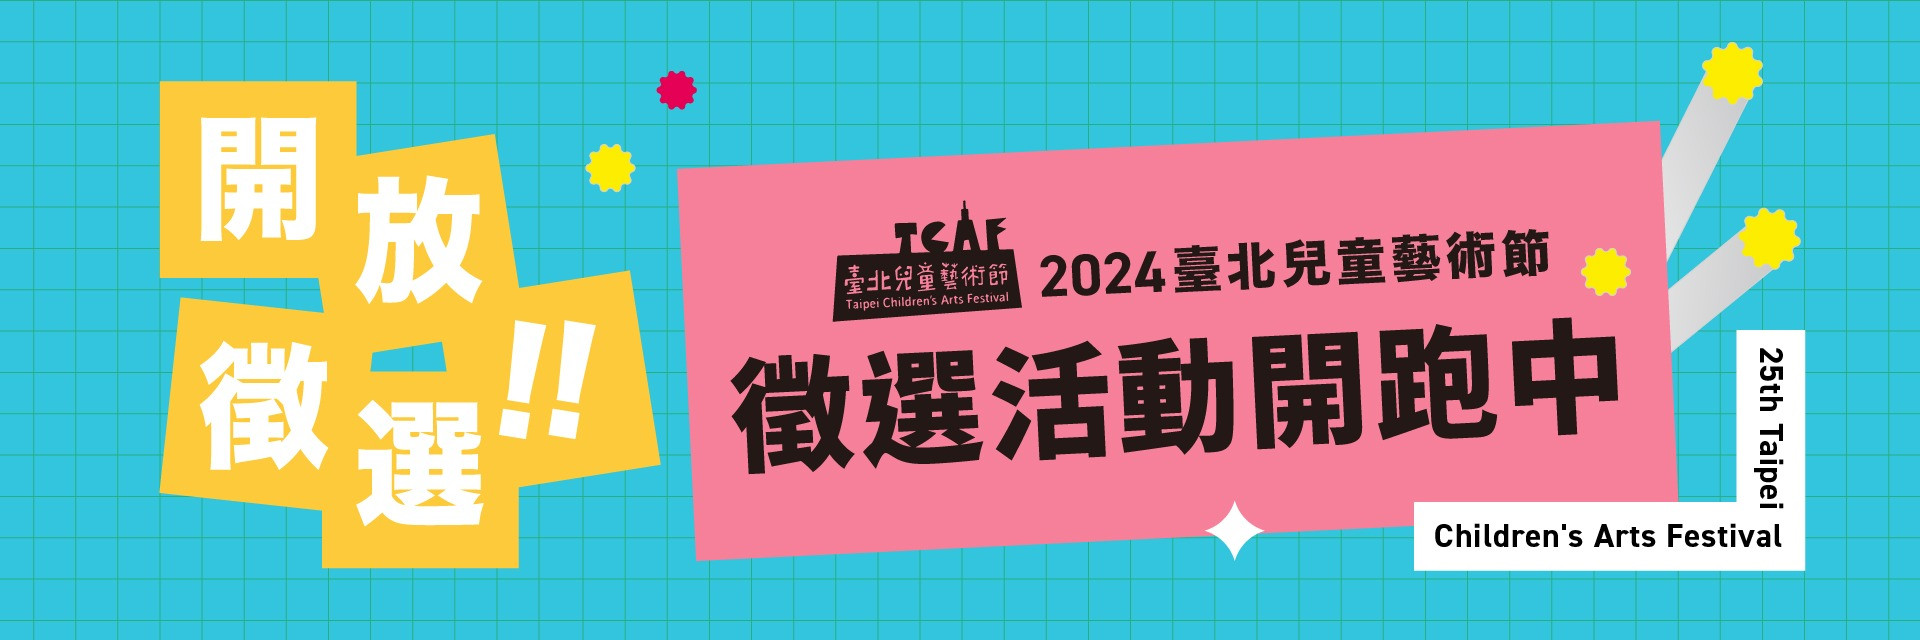 2024臺北兒童藝術節 徵選活動 起跑！ 主要圖片